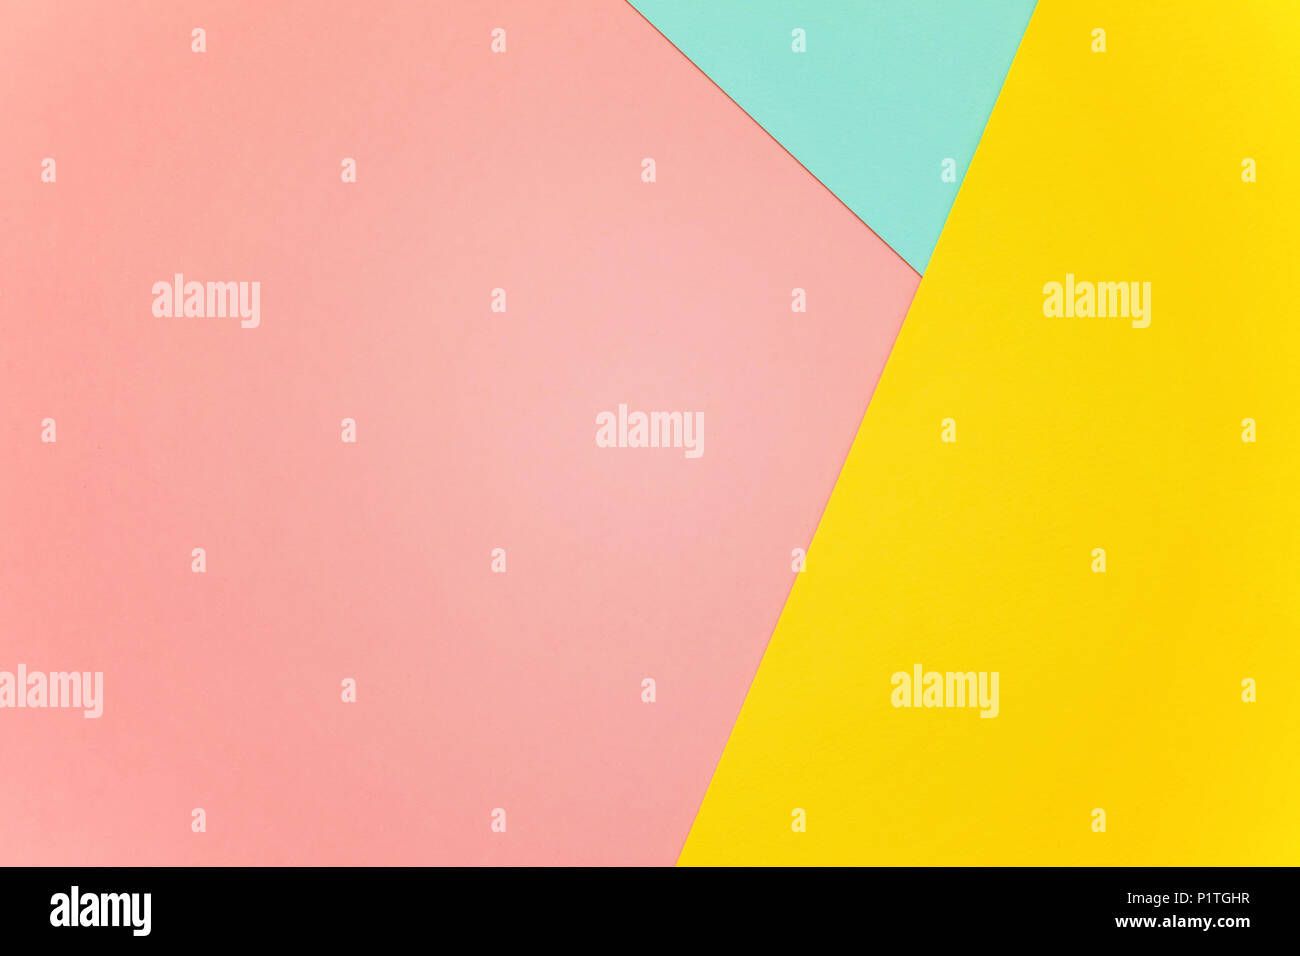 Blu, giallo e rosa color pastello carta piana geometrica sfondo dei laici Foto Stock